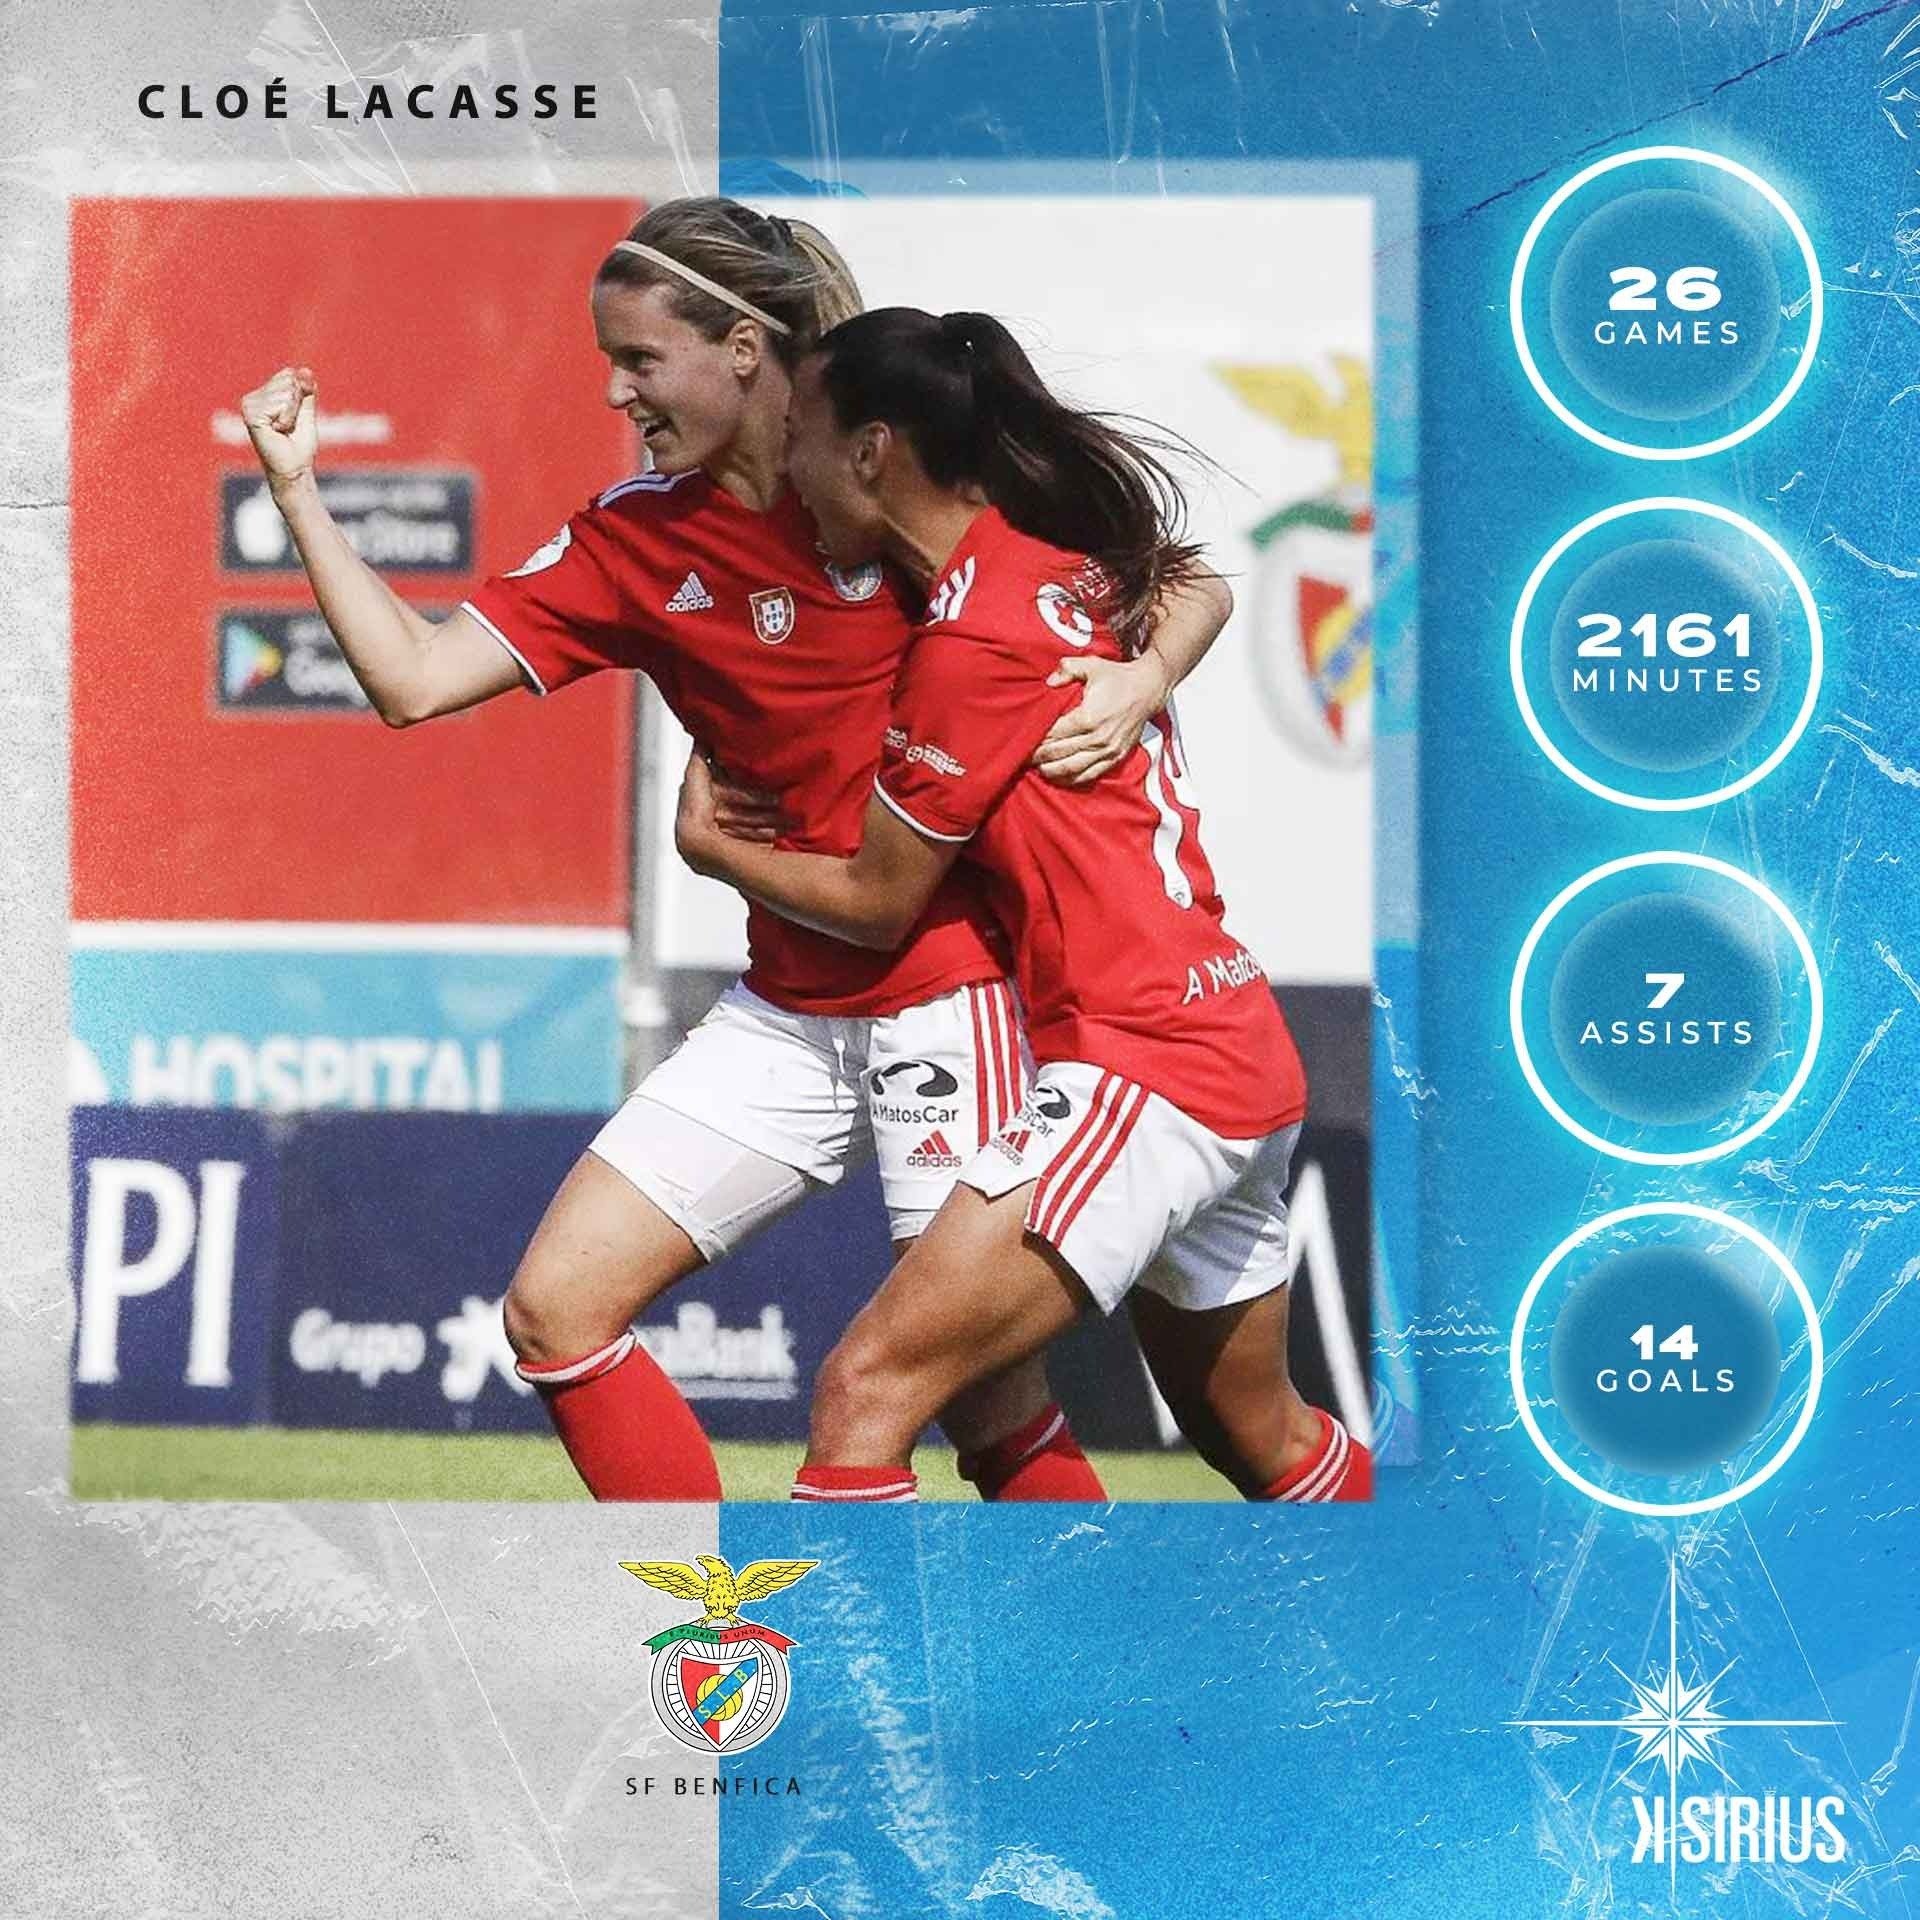 Stats: Cloé Lacasse (SL Benfica)